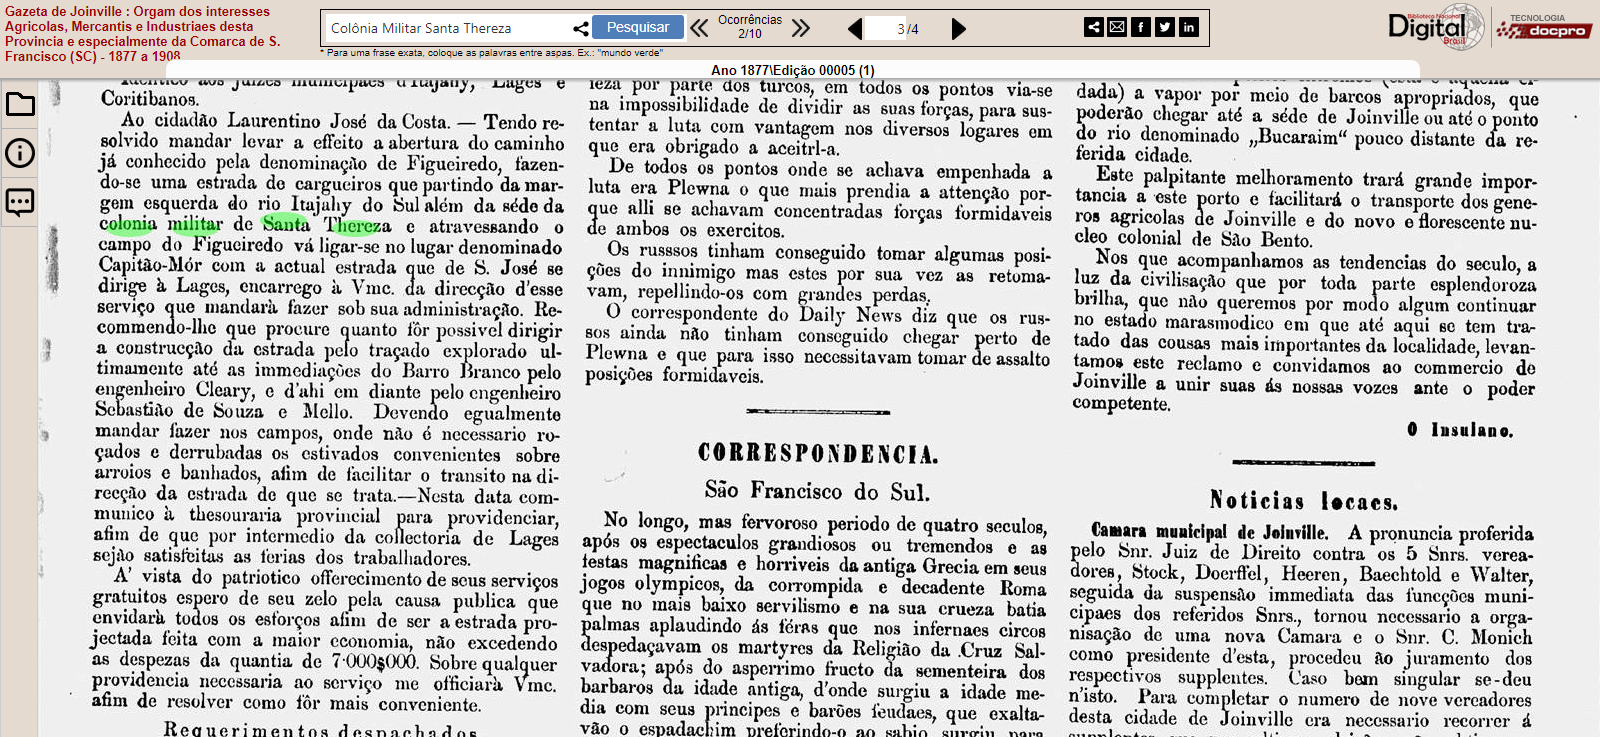 Recomendações para execução de reformas na Estrada para Lages – Gazeta de Joinville 1877 ed. 00005